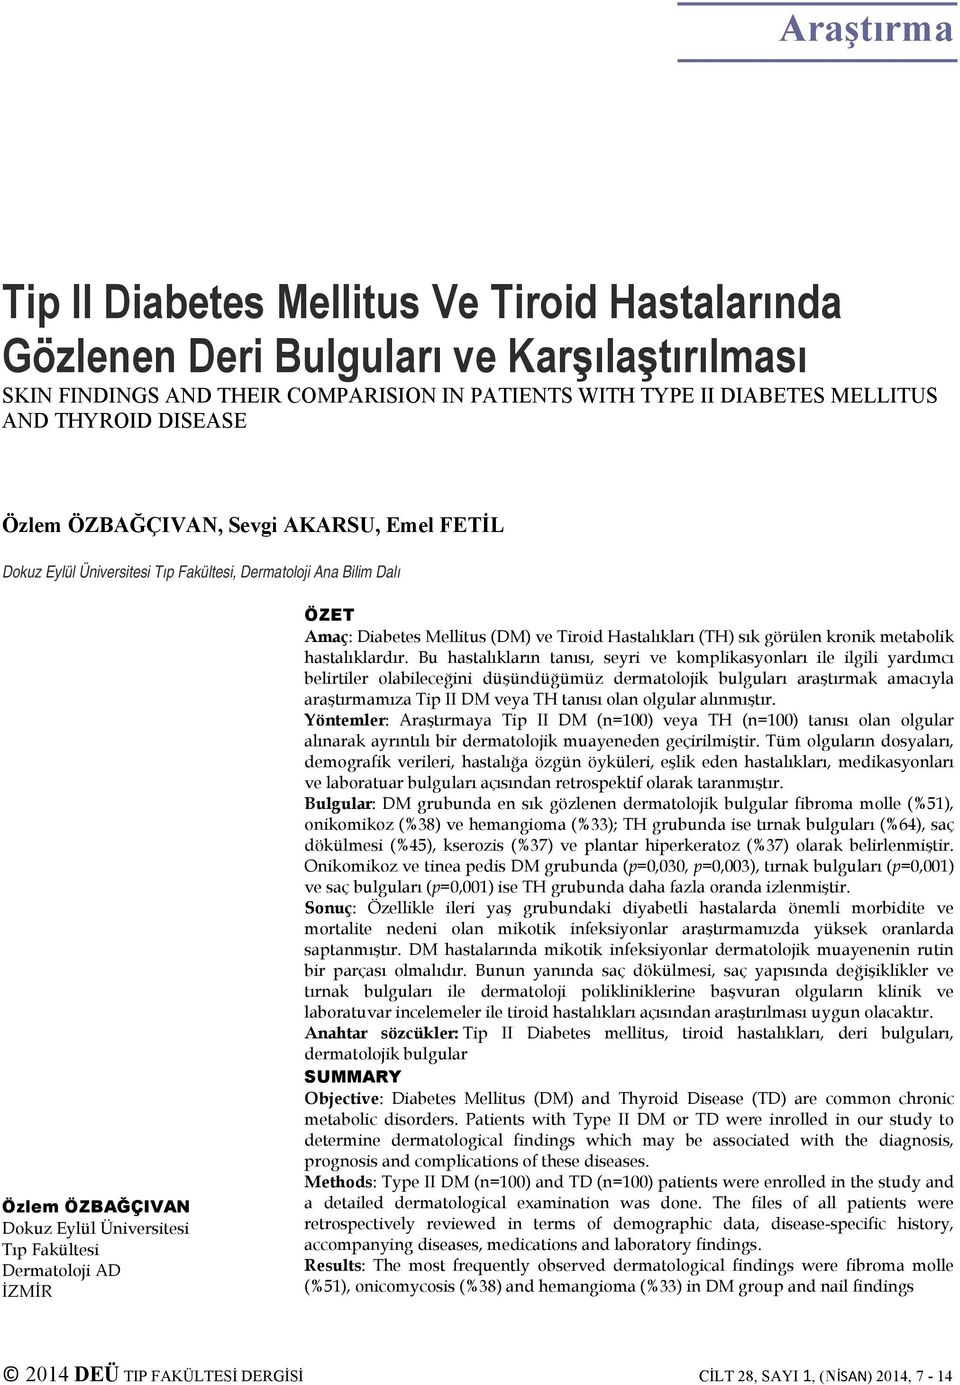 Amaç: Diabetes Mellitus (DM) ve Tiroid Hastalıkları (TH) sık görülen kronik metabolik hastalıklardır.